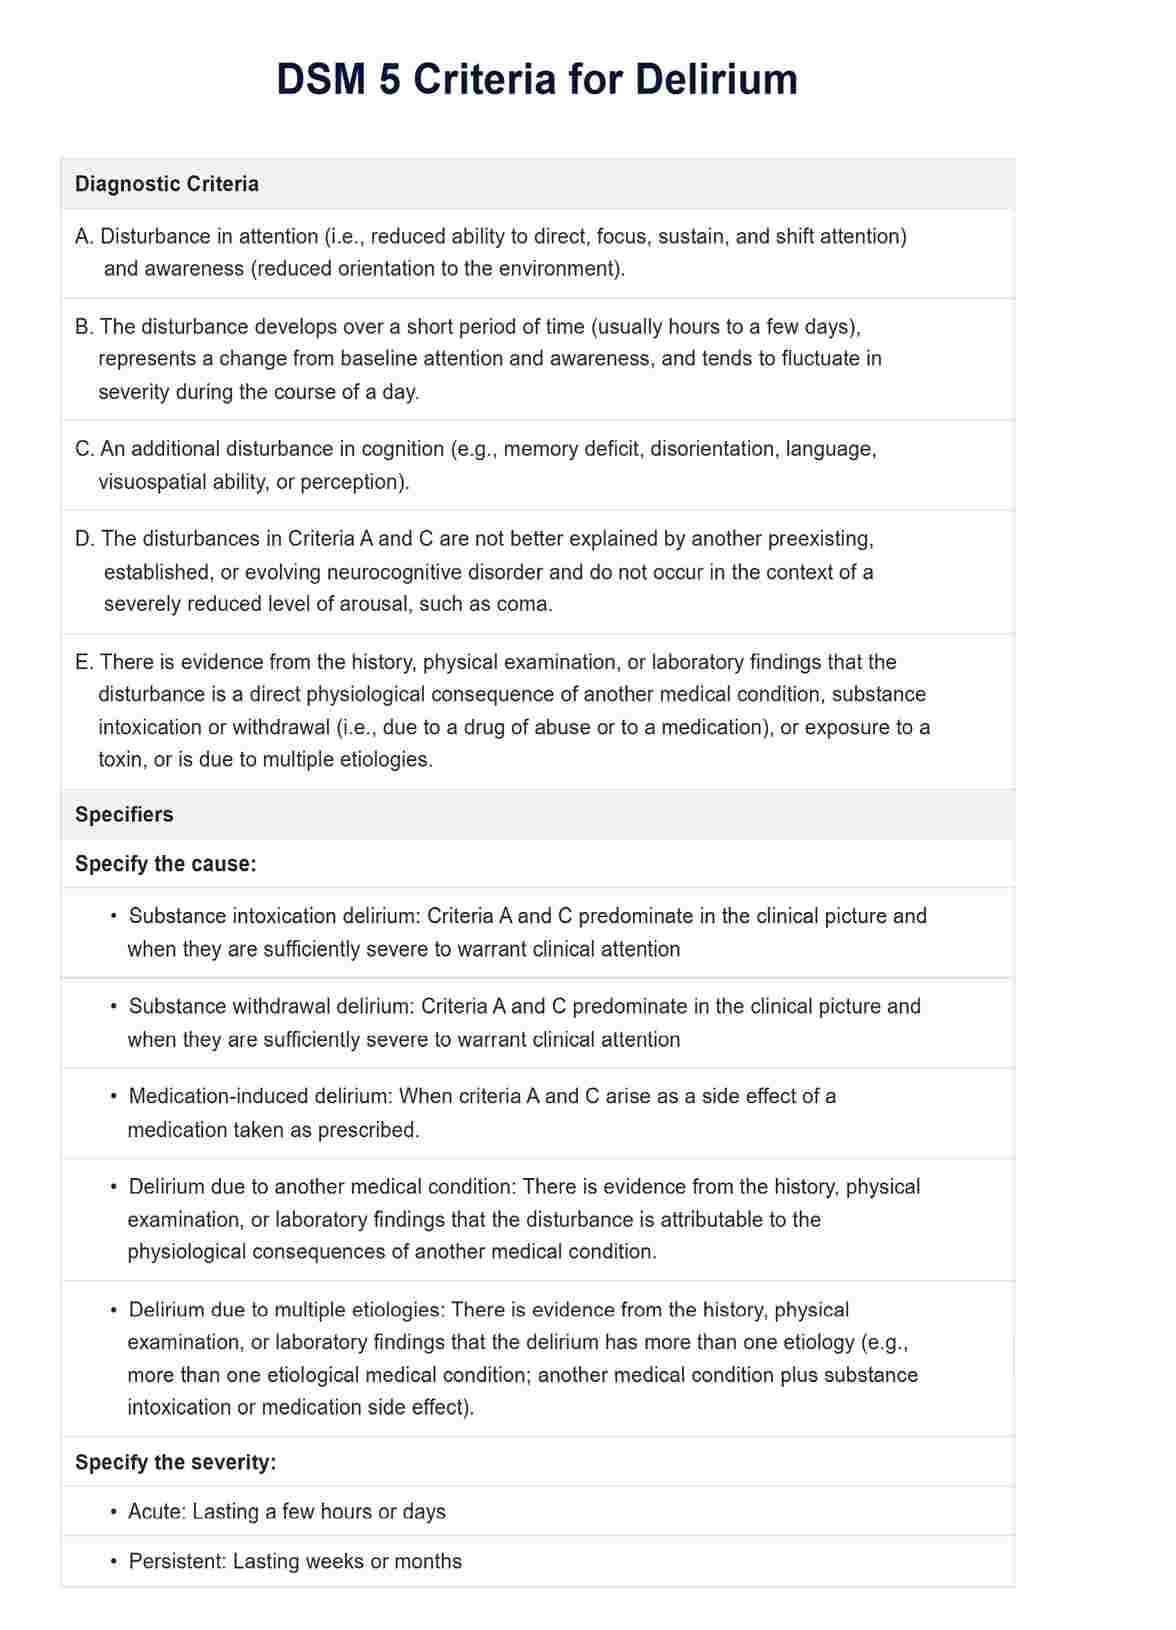 DSM 5 Criteria for Delirium PDF Example